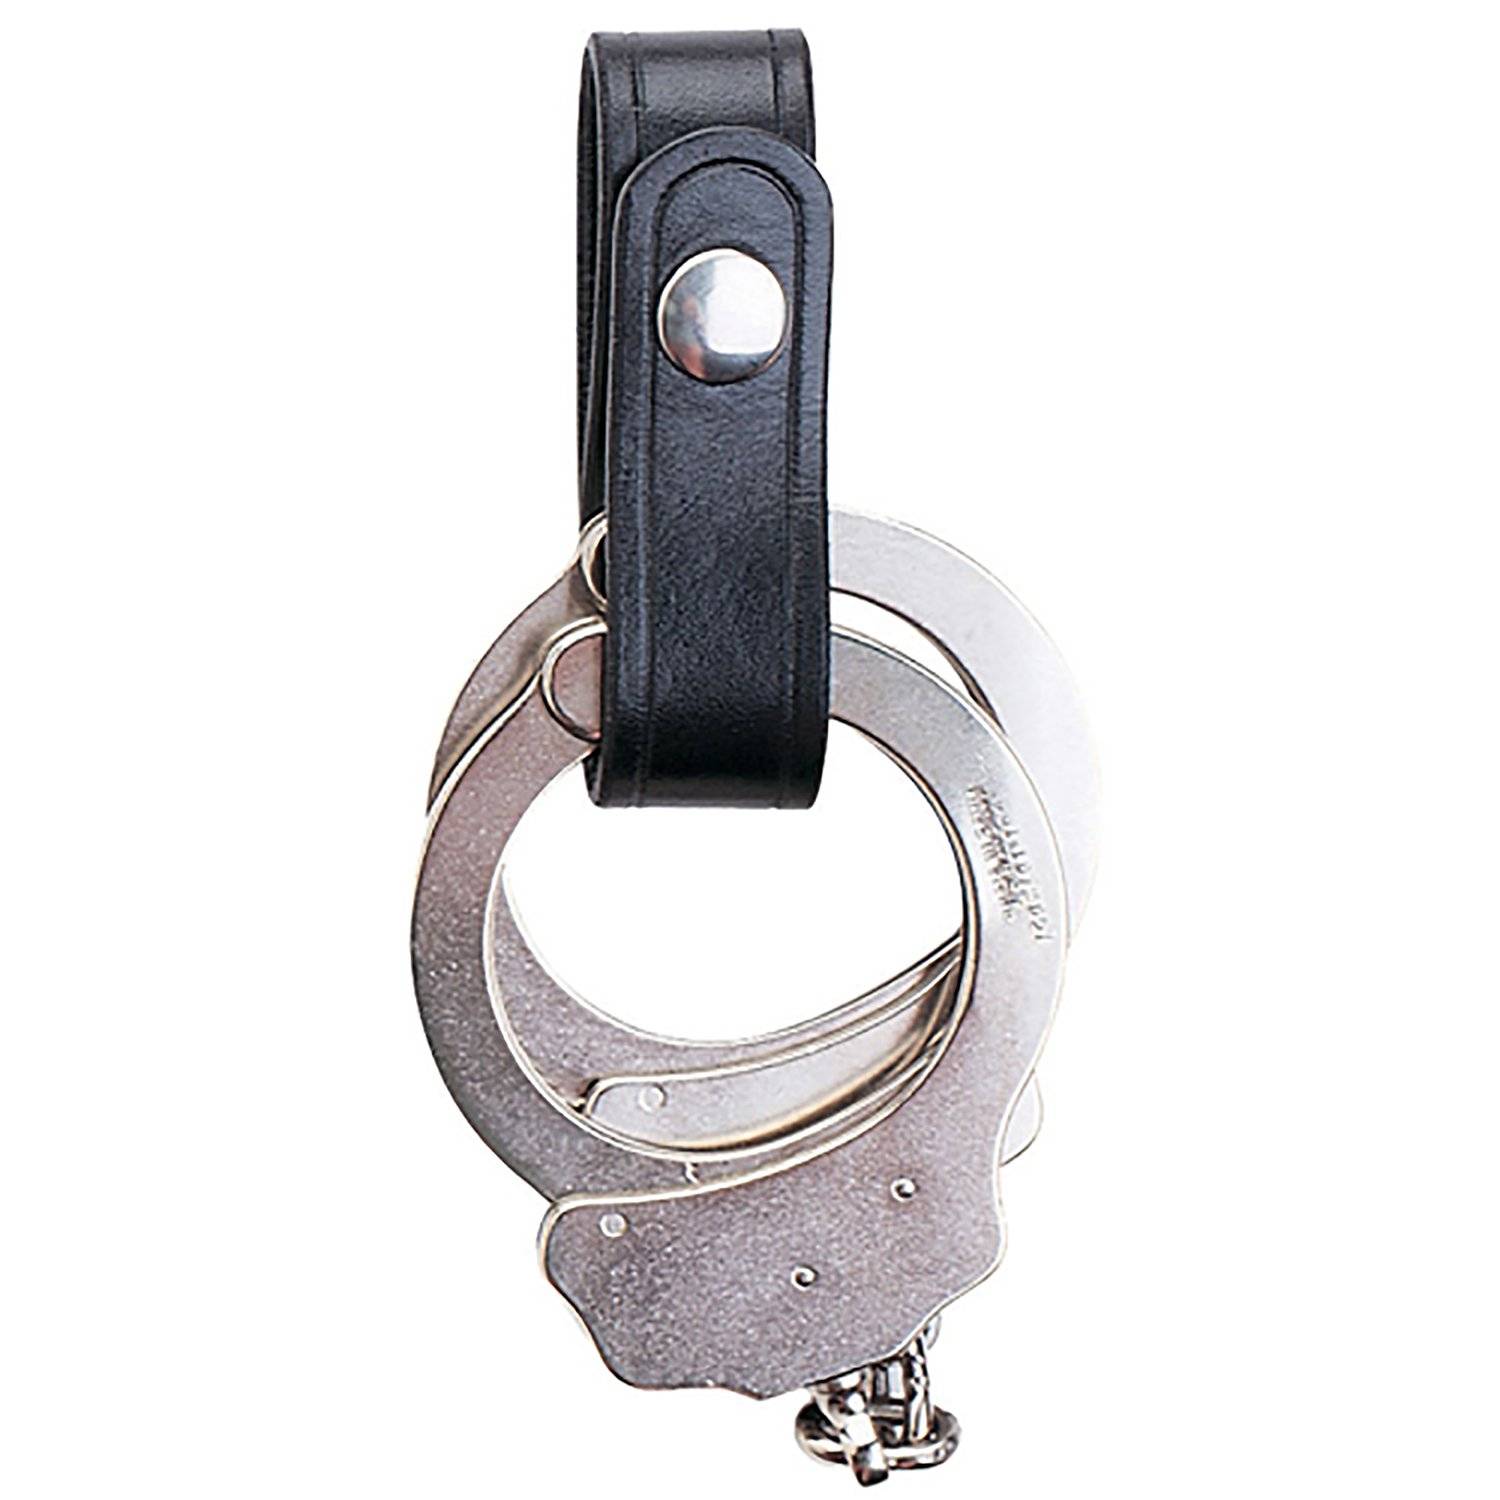 Aker Handcuff Strap